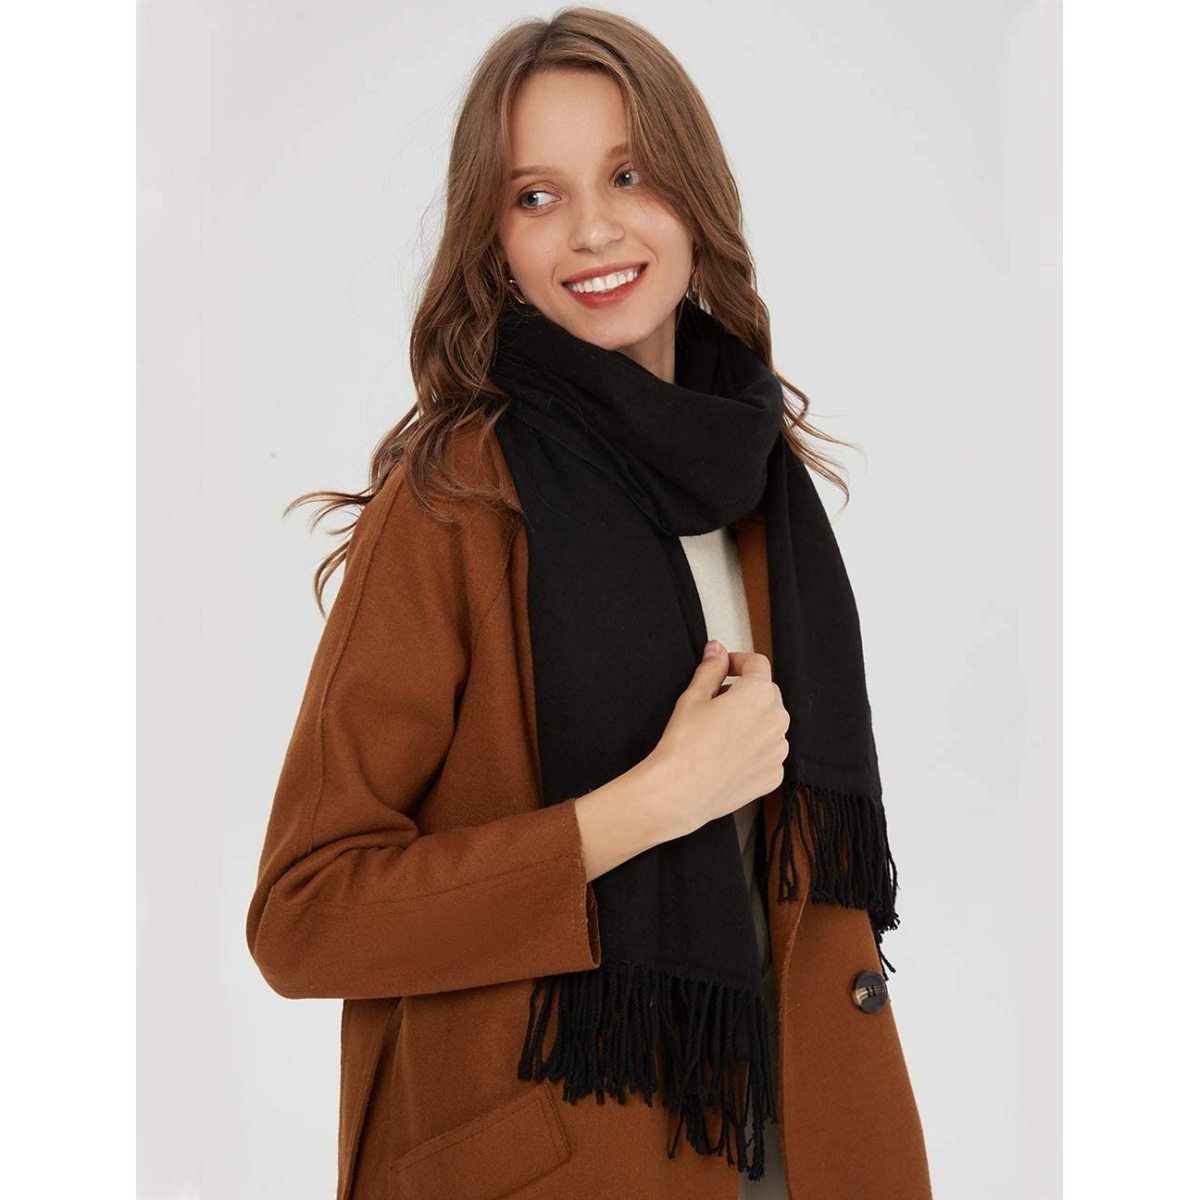 Jormftte Halstuch Schal Warm mit unifarben quasten,Einfarbig Schwarz Herbst Baumwolle Winter